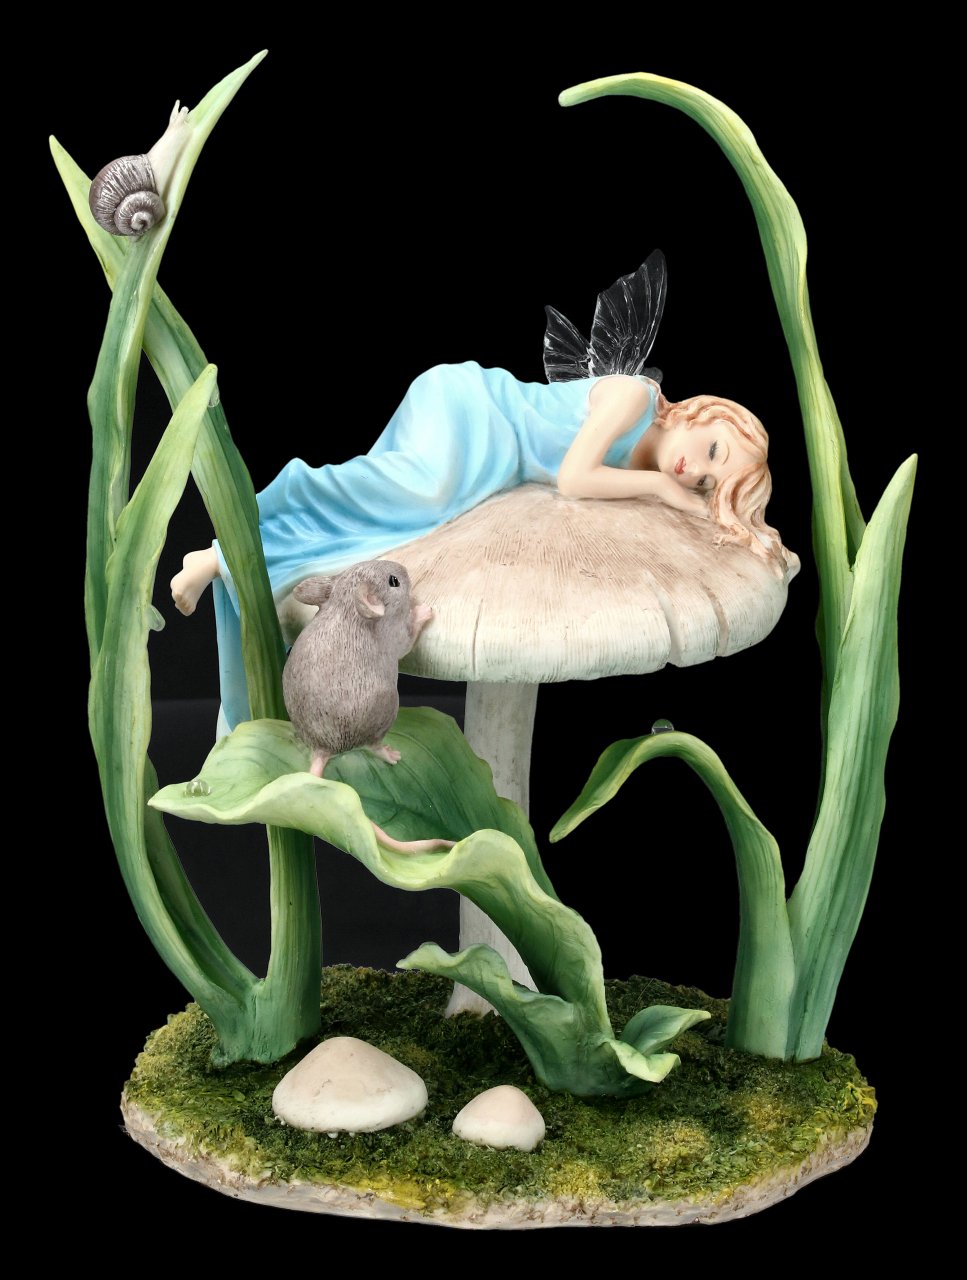 Fairy Figurine sleeps on Mushroom - Sweet Dreams